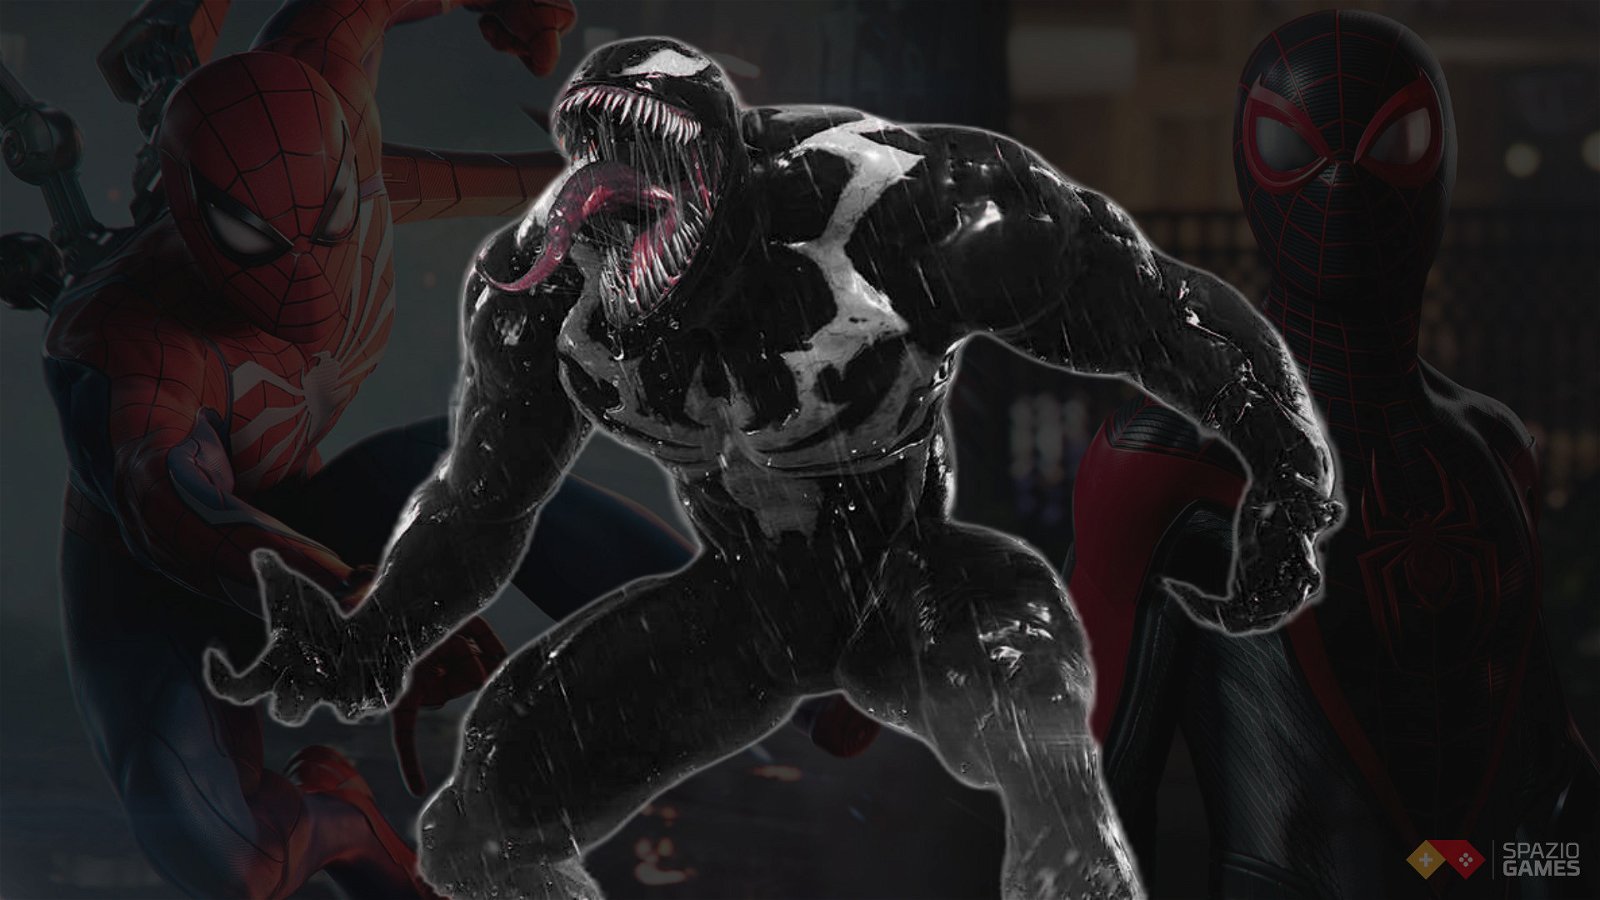 L'epopea di Venom, dalle origini a Marvel's Spider-Man 2